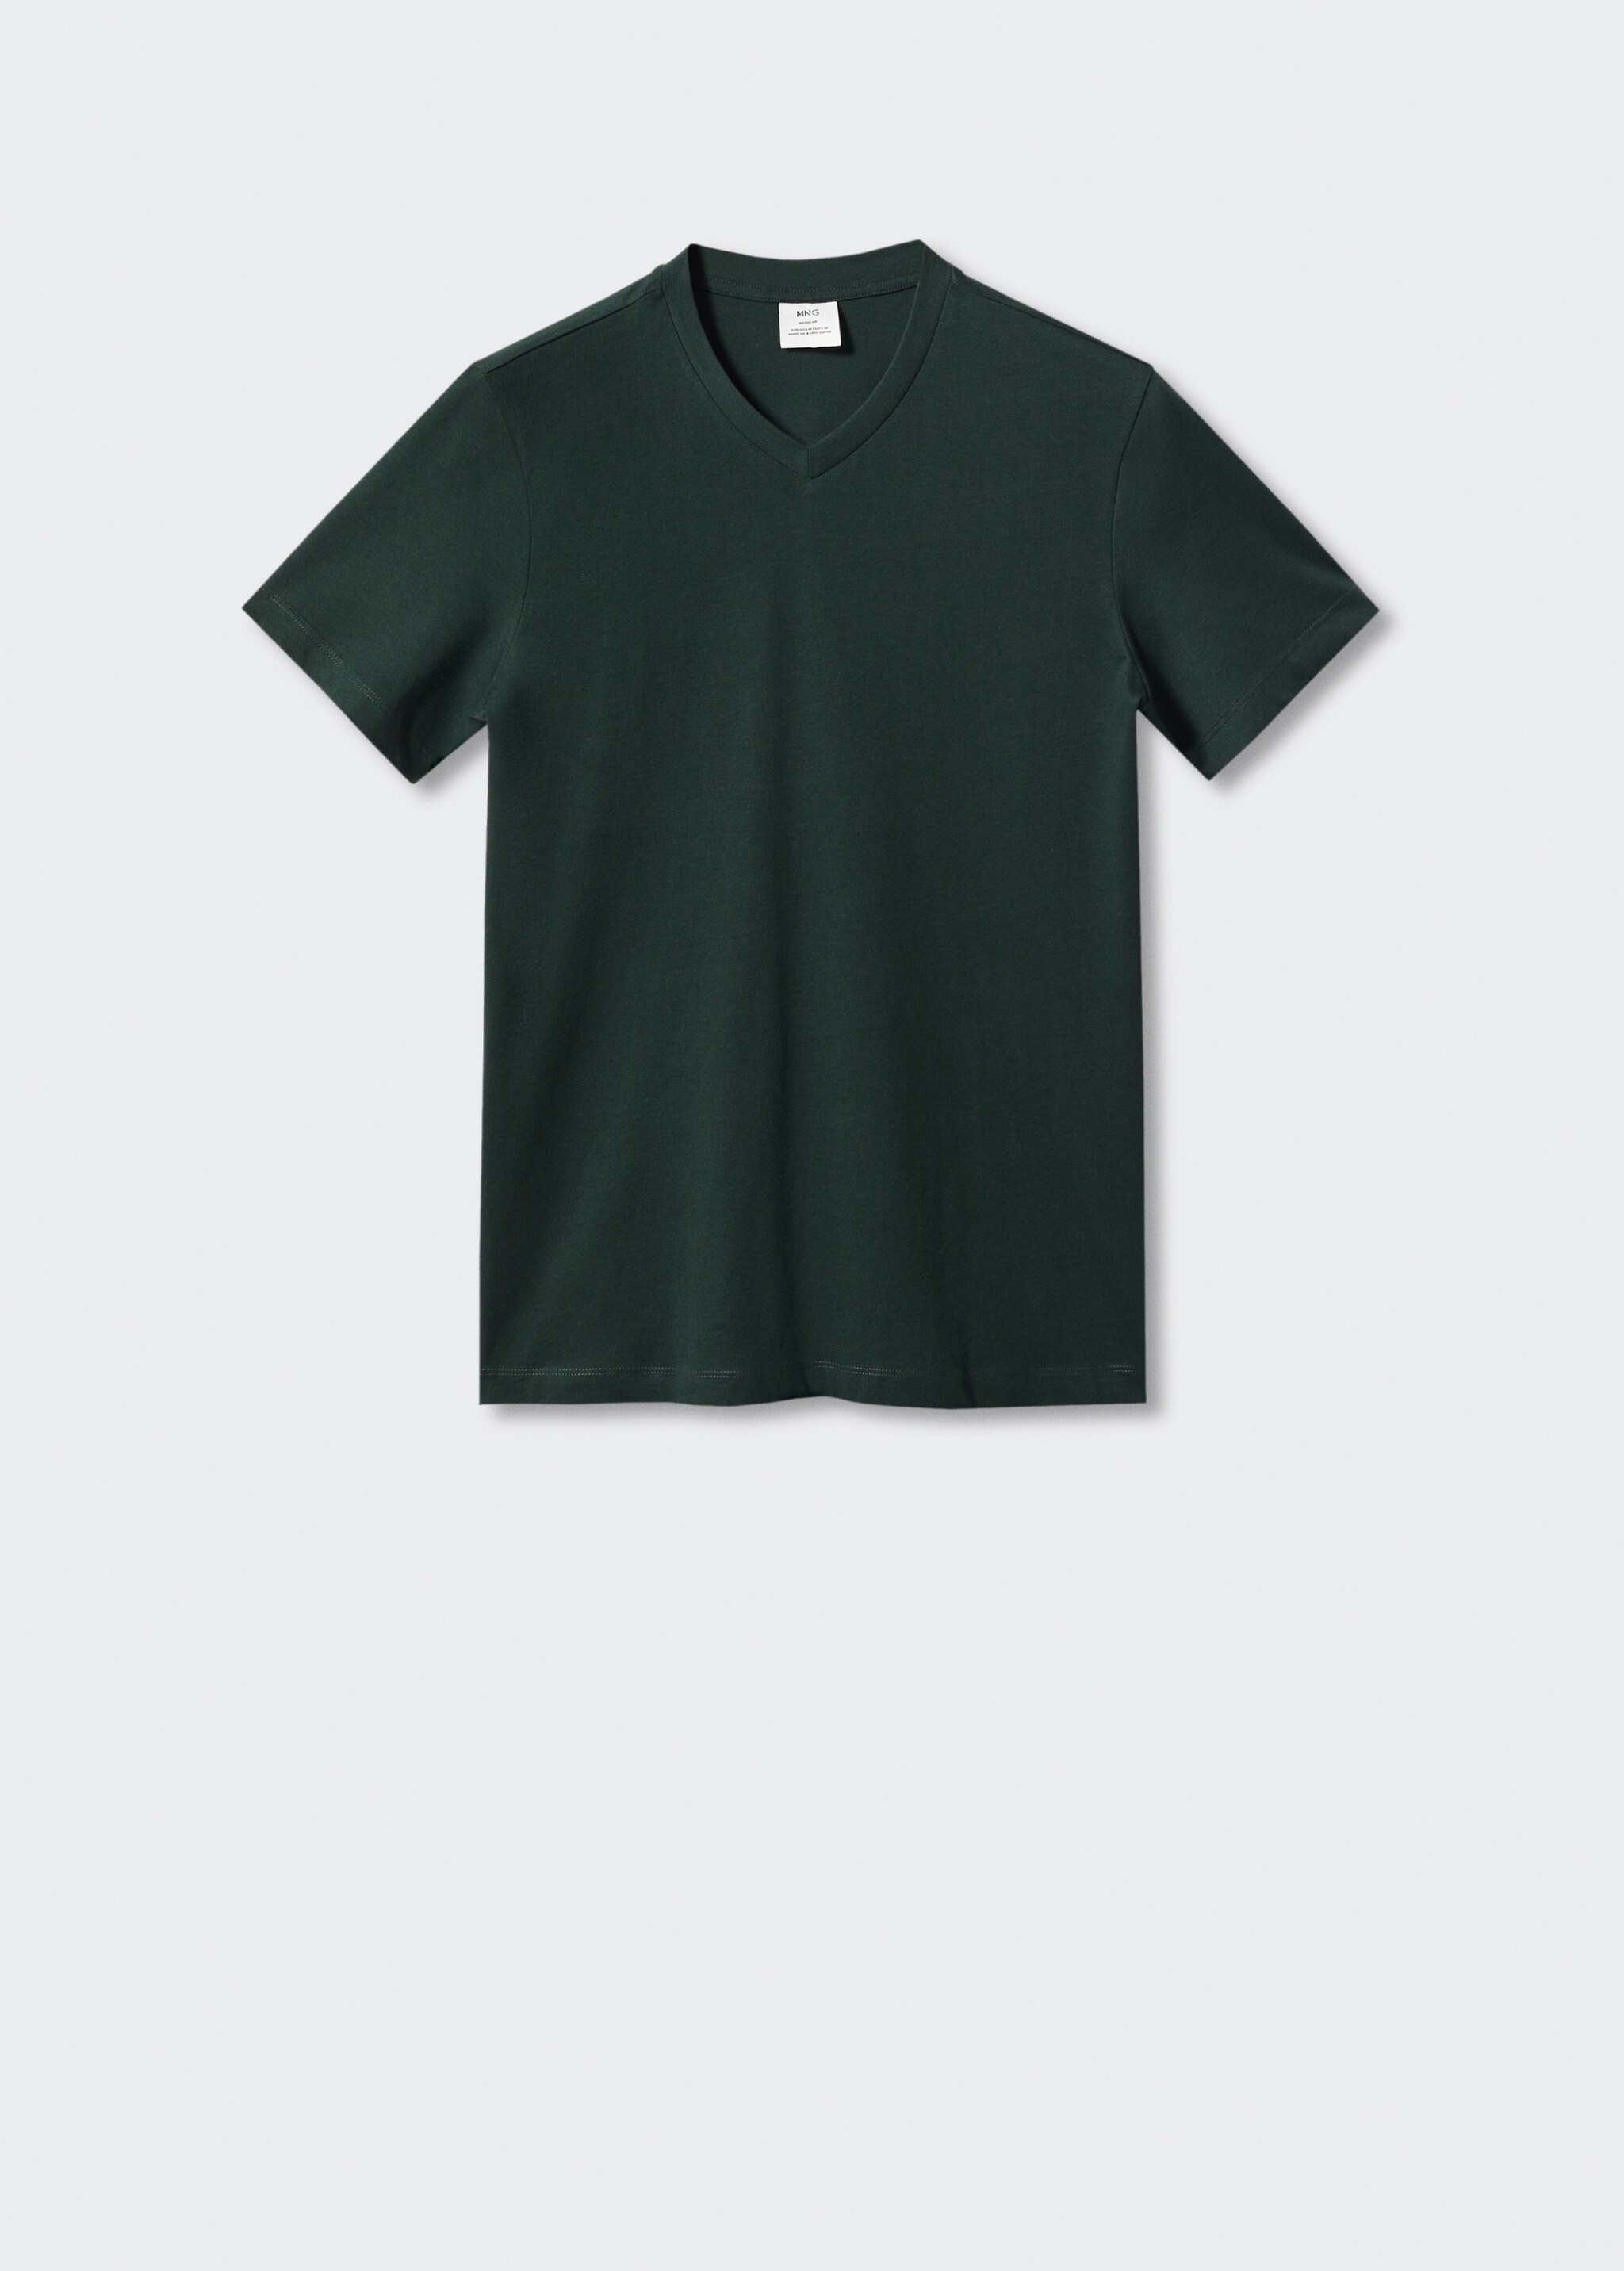 Camiseta básica algodón cuello pico - Artículo sin modelo